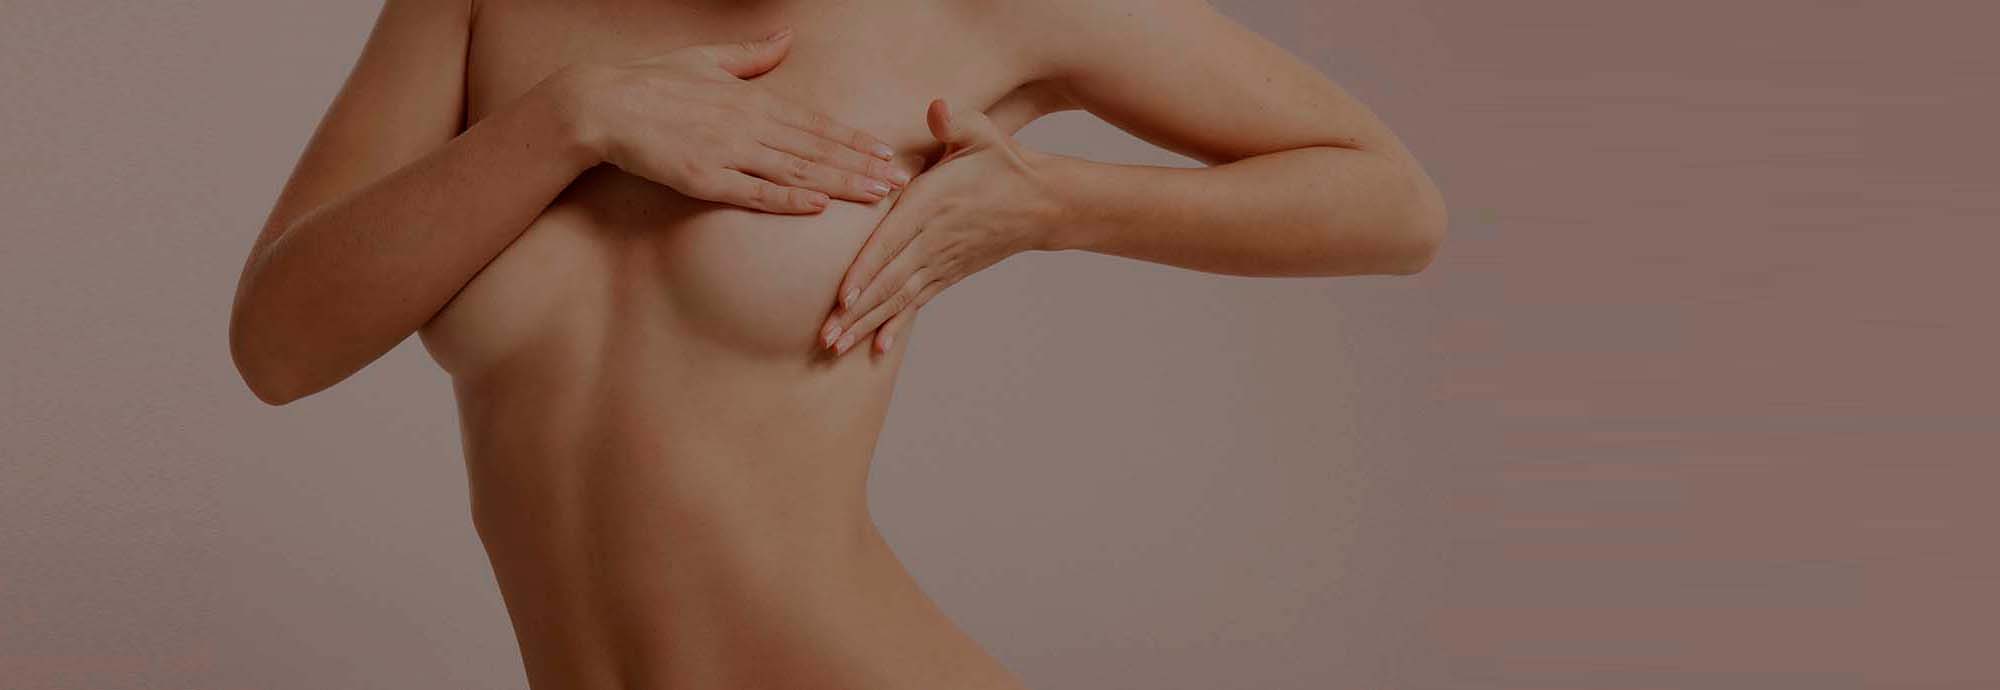 La reconstruction mammaire après cancer du sein à Valence